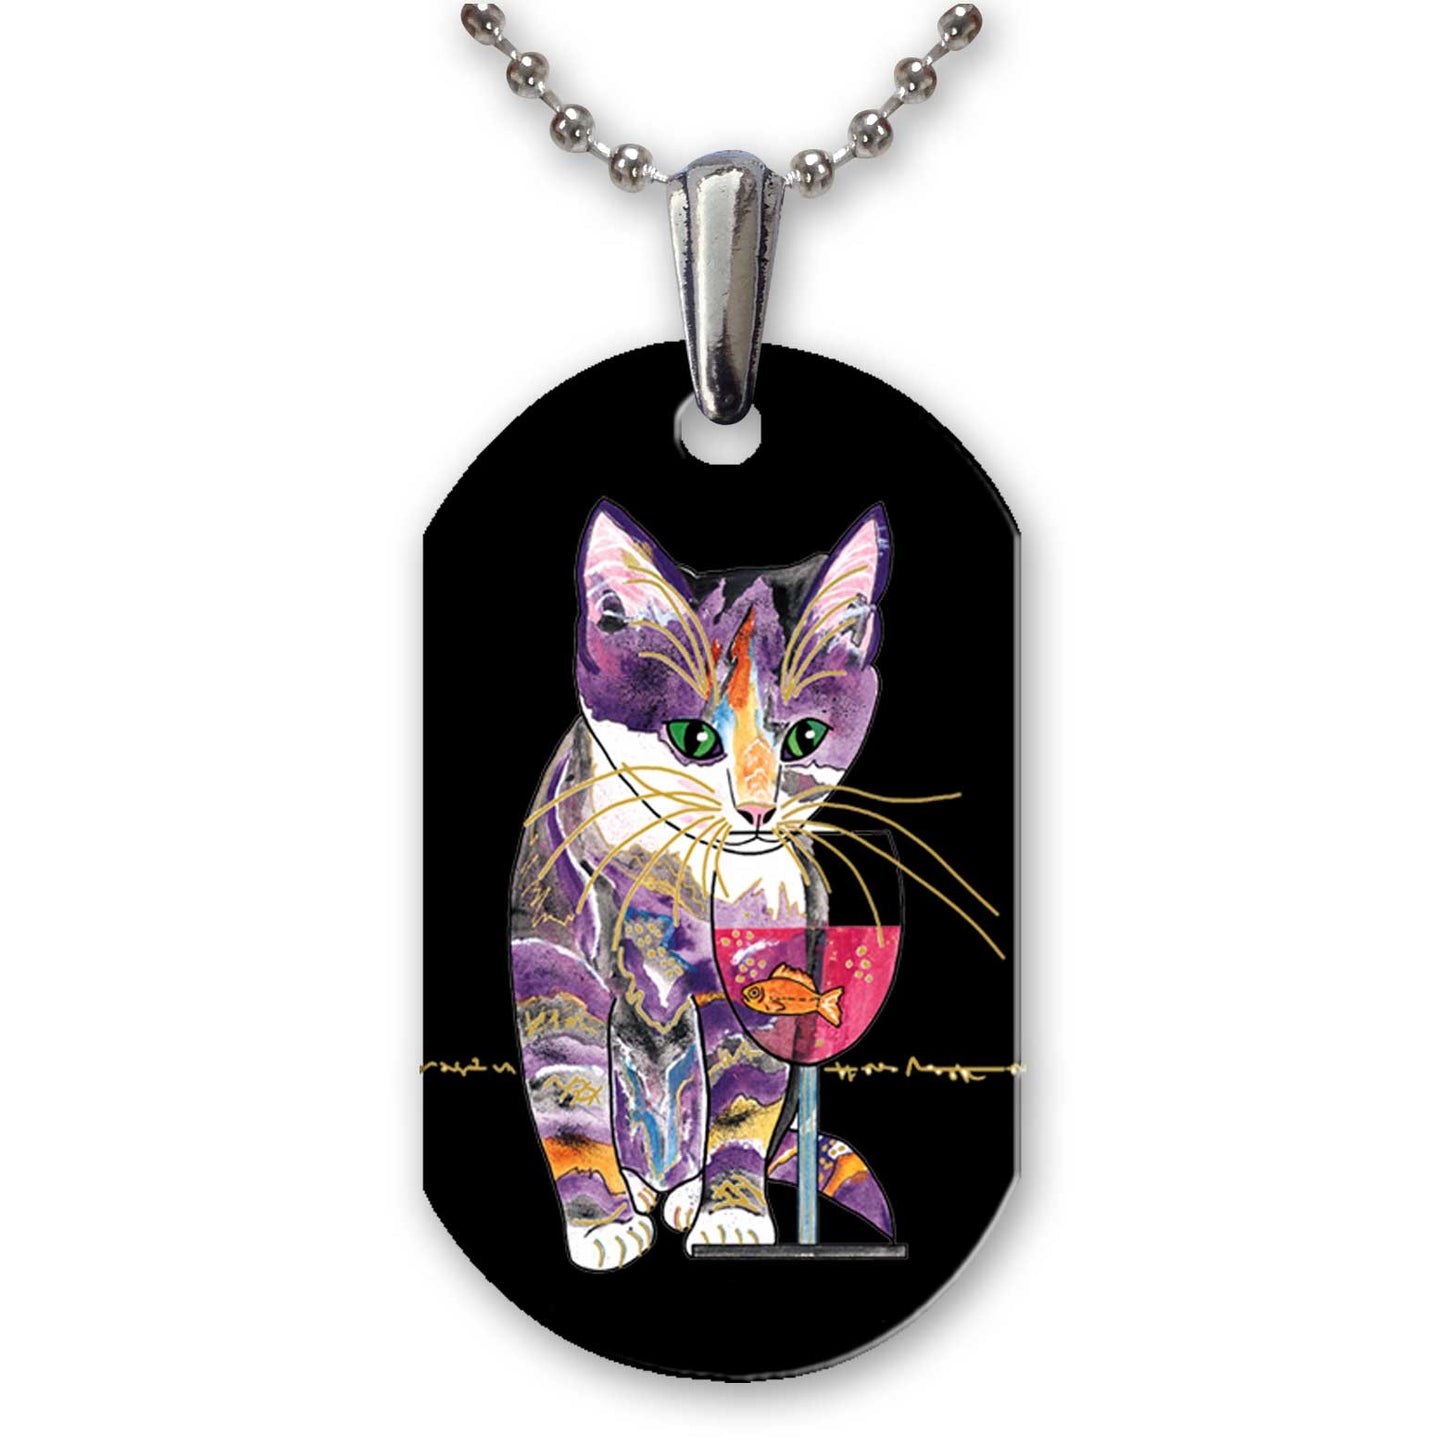 Catnip Sip on Black - Aluminum Cat Art Pendant Necklace by Claudia Sanchez